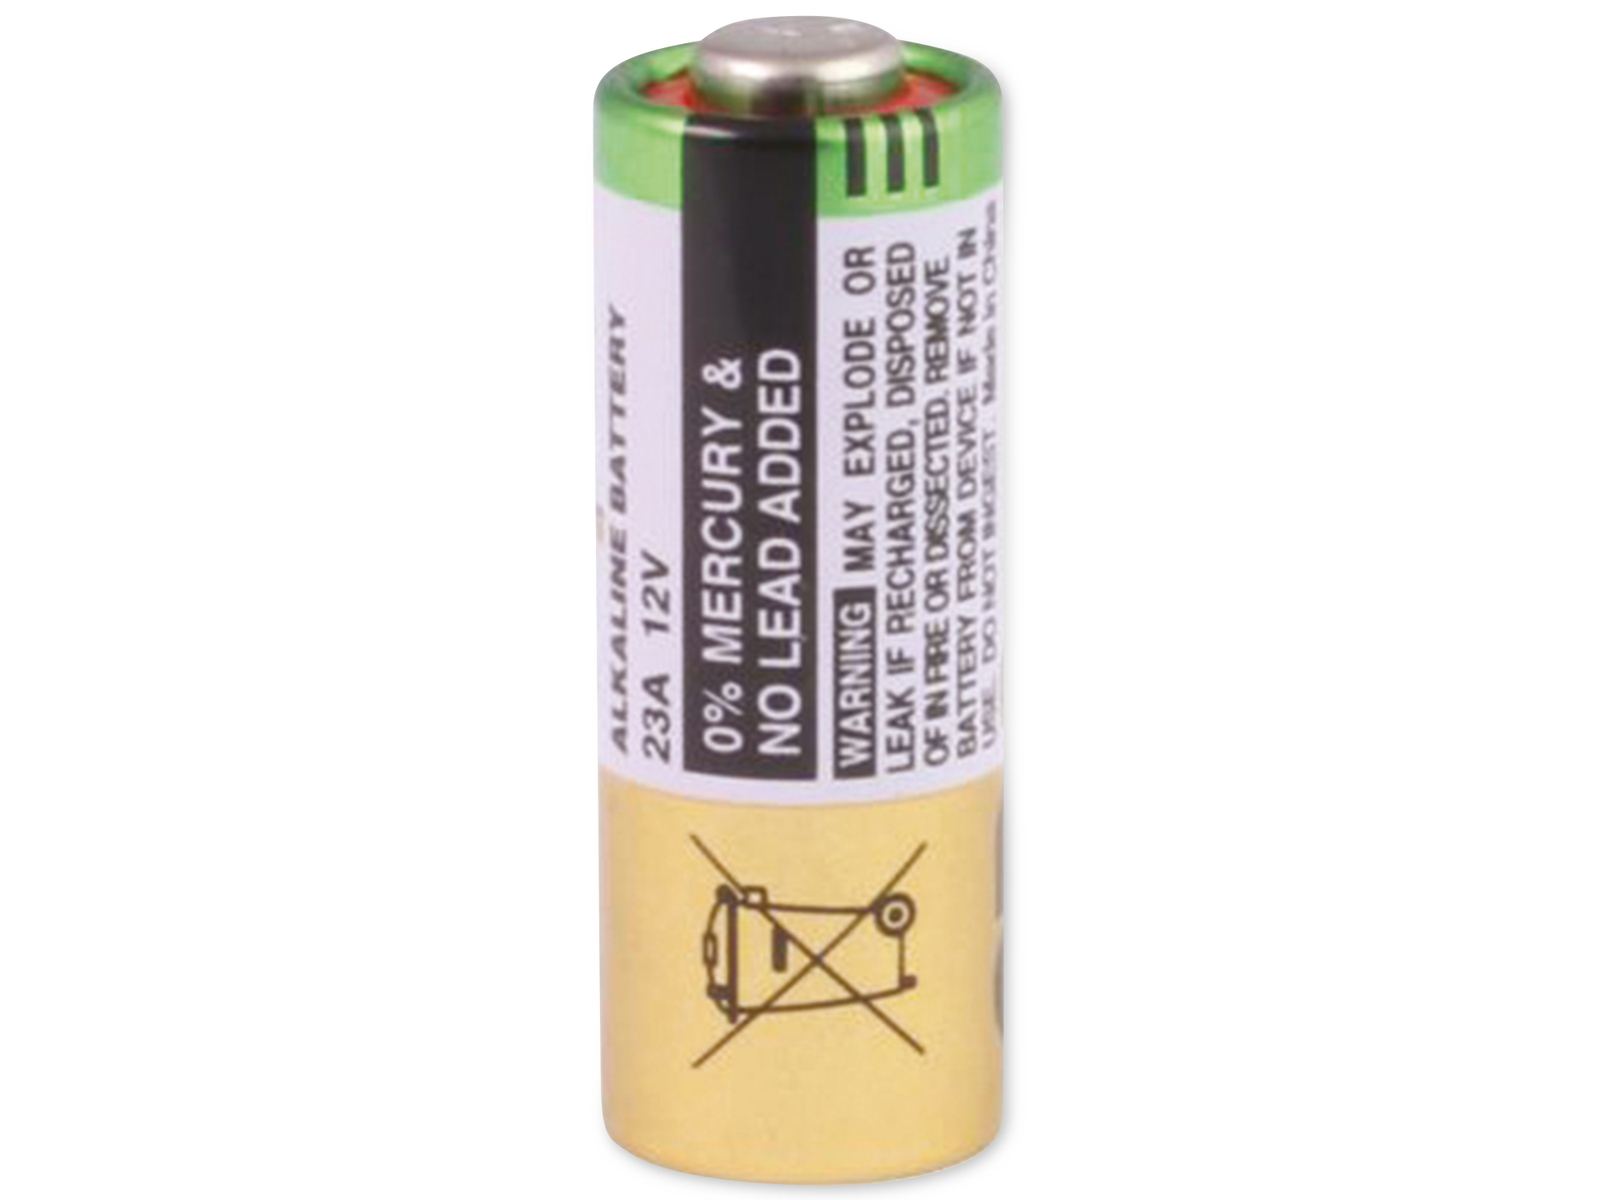 GP Alkaline HighVoltage Batterie 23A, 23A High Voltage Alakline, 5 Stck.  online kaufen